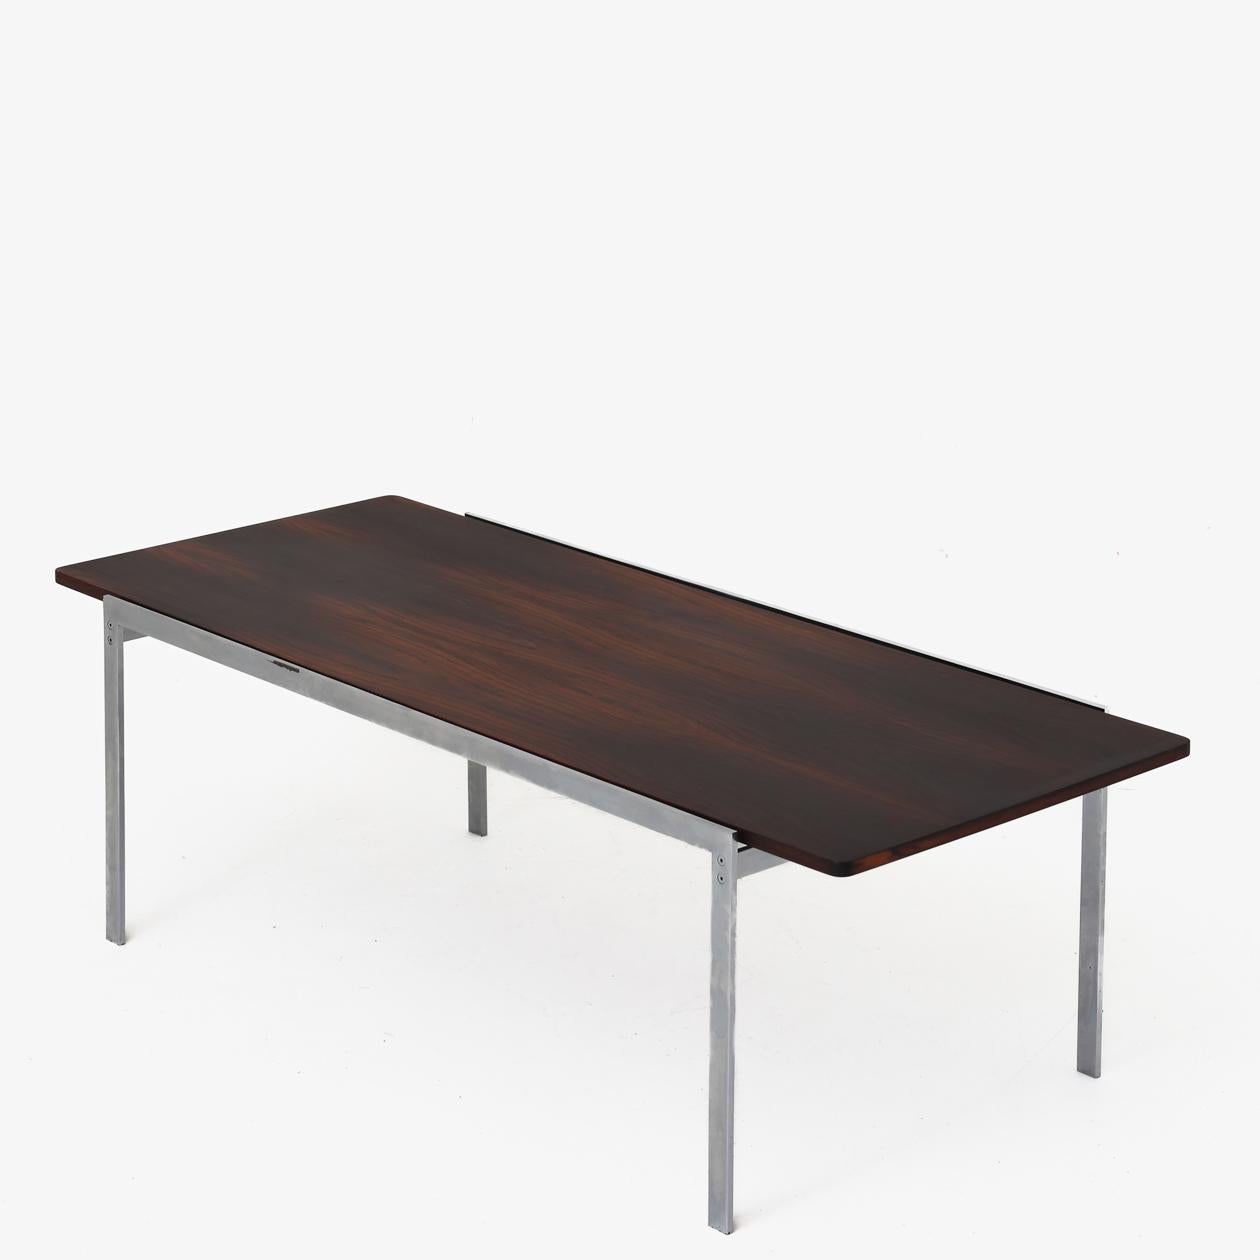 Table basse rectangulaire avec plateau en bois de rose et structure en acier chromé. Arne Jacobsen / Fritz Hansen